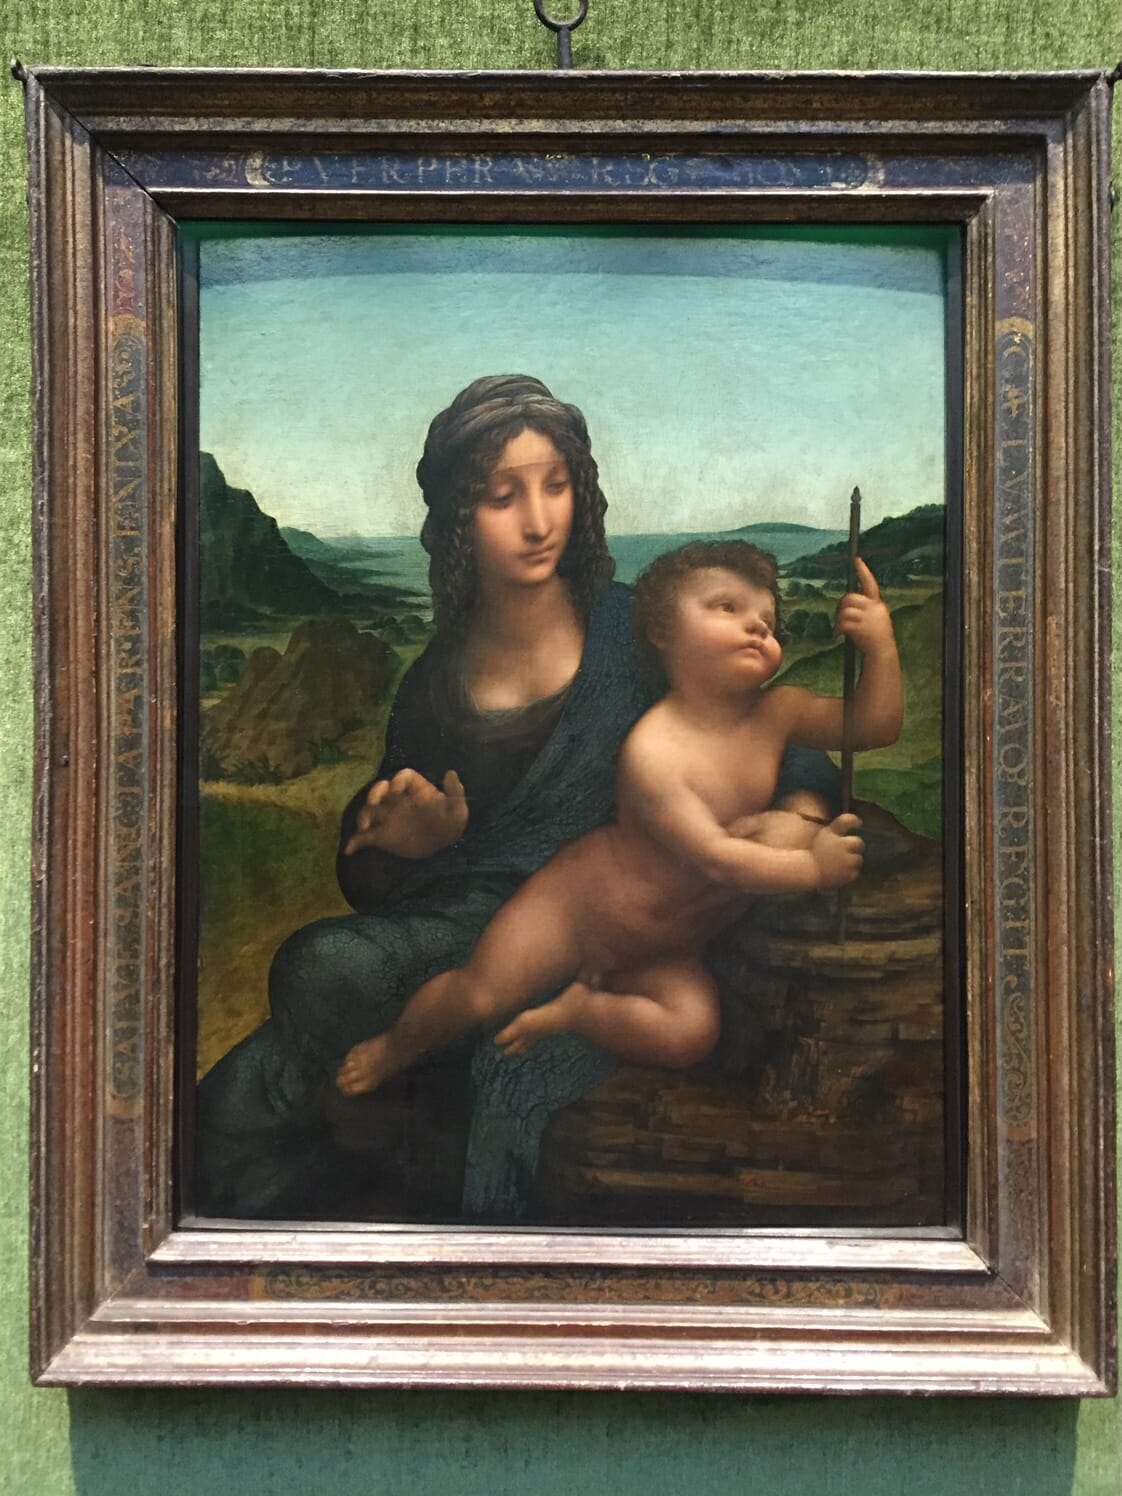 La pintura de la Virgen del devanador, de Leonardo da Vinci, en la Galería Nacional de Escocia en Edimburgo